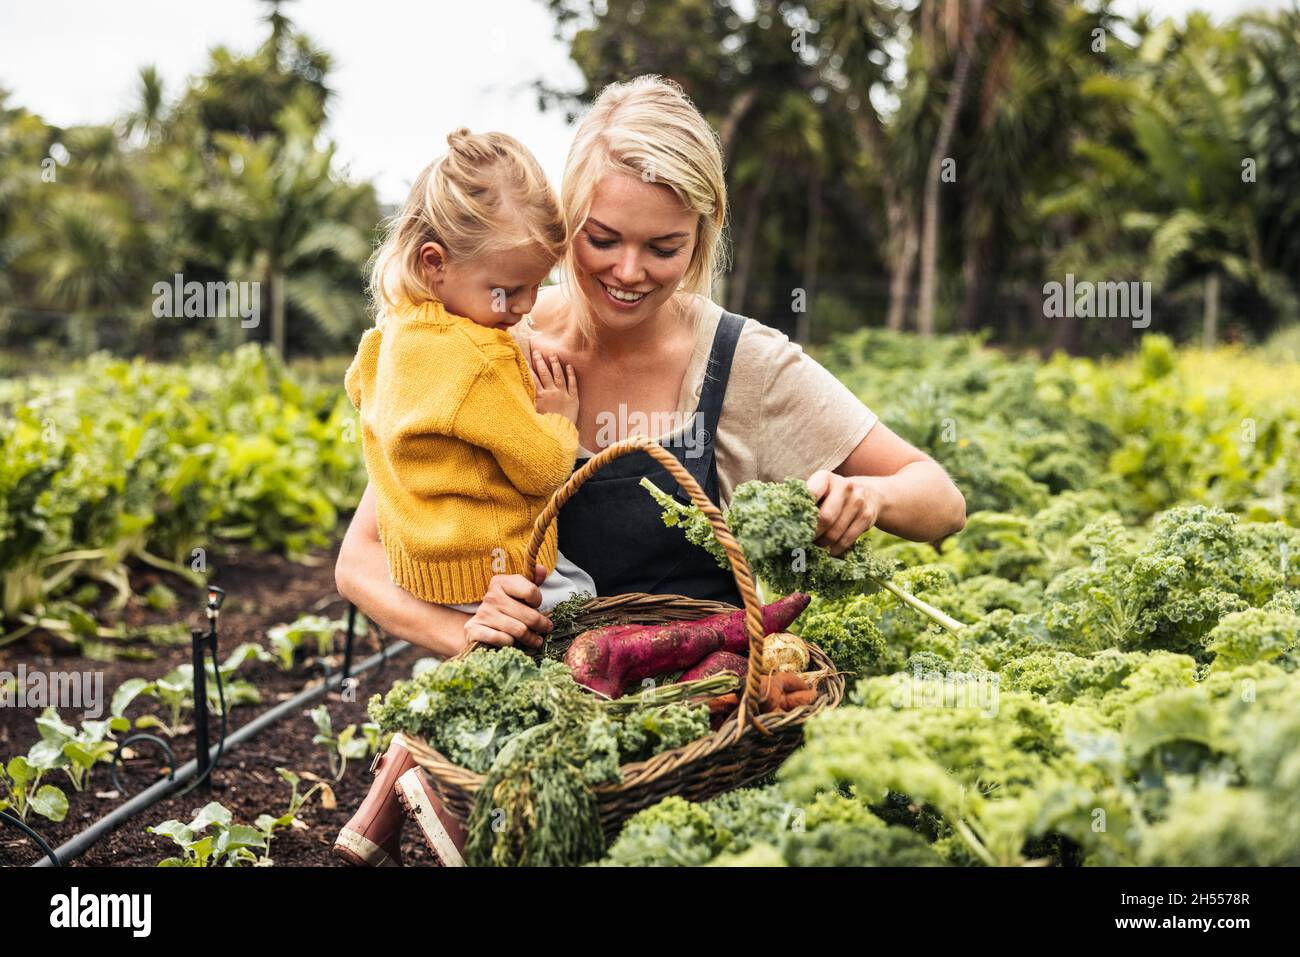 Glückliche junge Mutter trägt ihre Tochter beim Gemüsepflücken in einem Bio-Garten. Alleinerziehende Mutter sammelt frischen Grünkohl in einen Korb. Sich selbst unterstützen Stockfoto